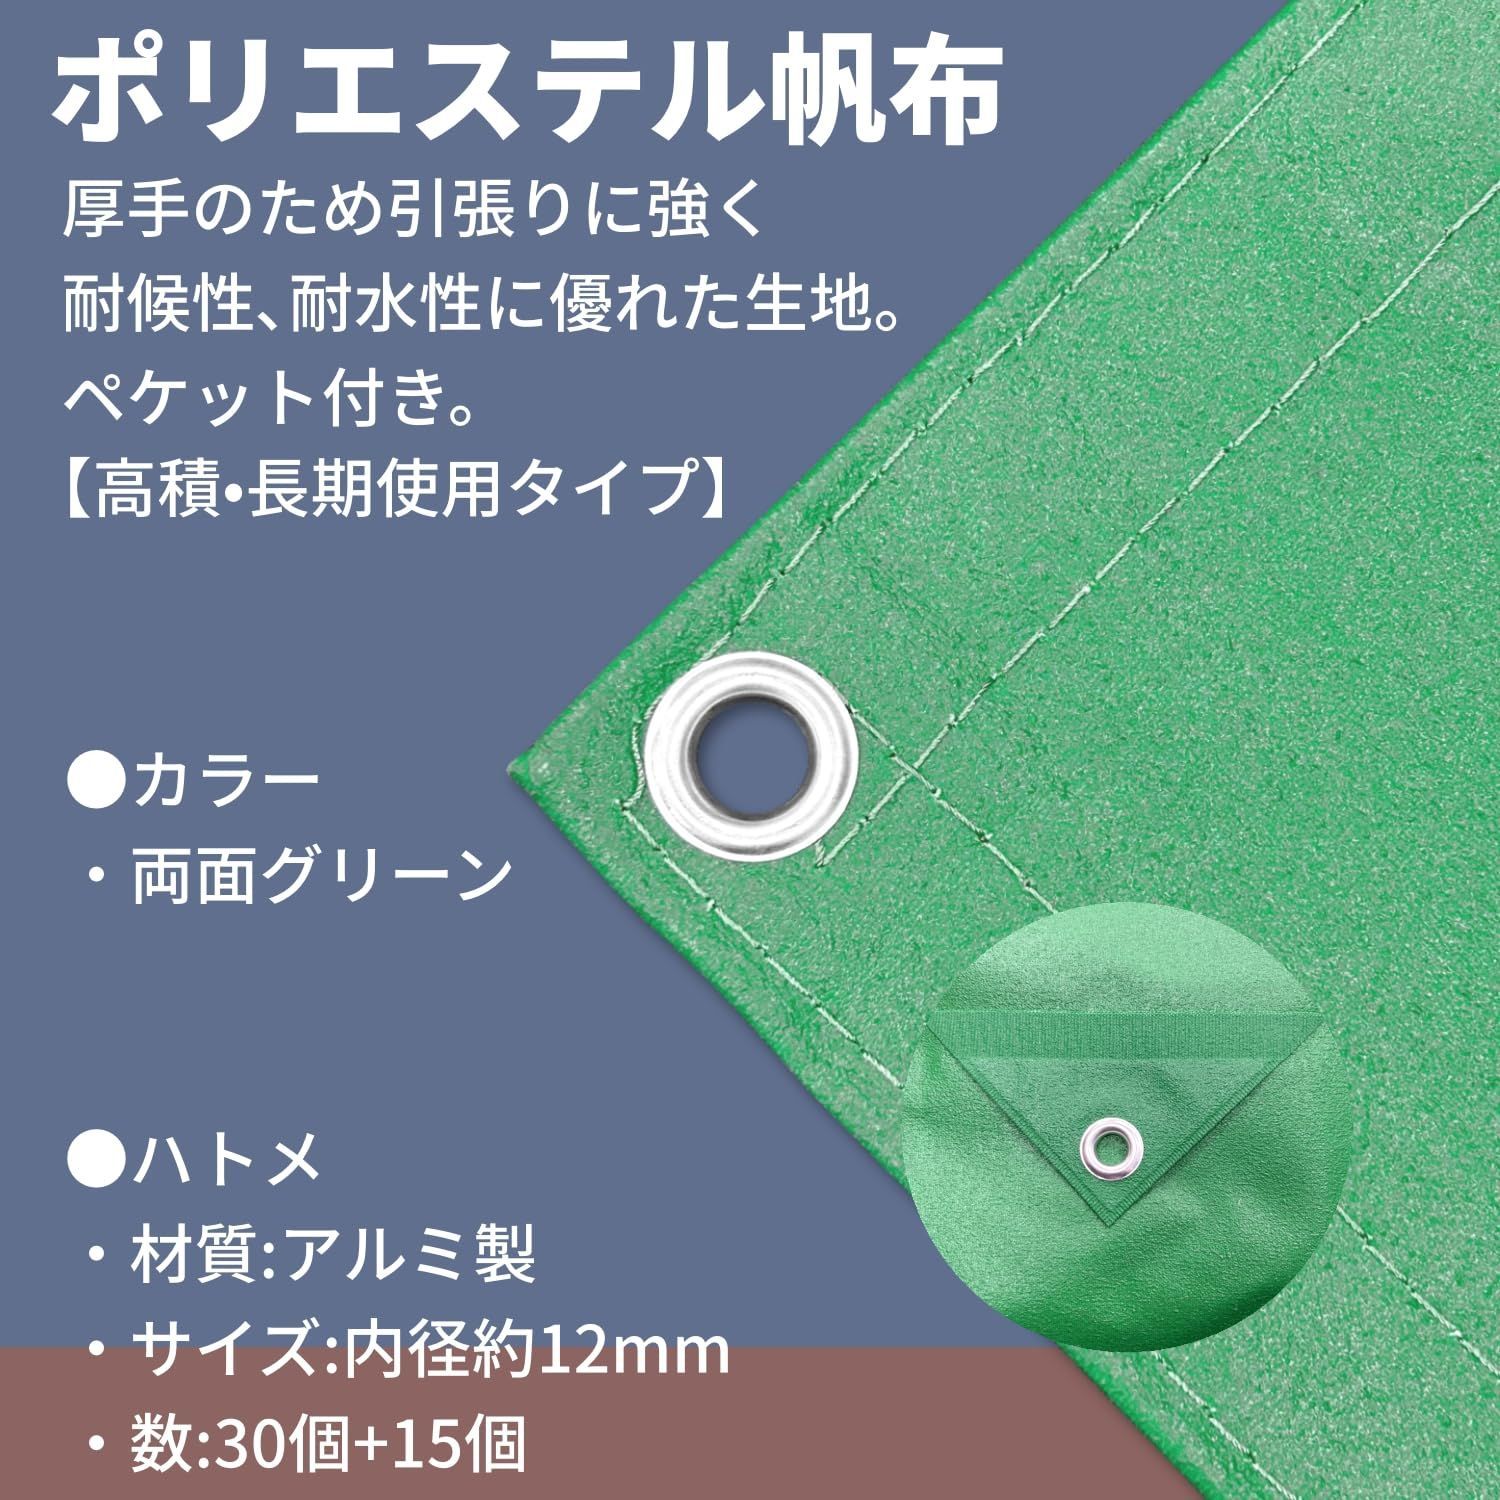 新品 帆布トラックシート Make) 4号 2.6m×3.8m ユタカメイク(Yutaka H